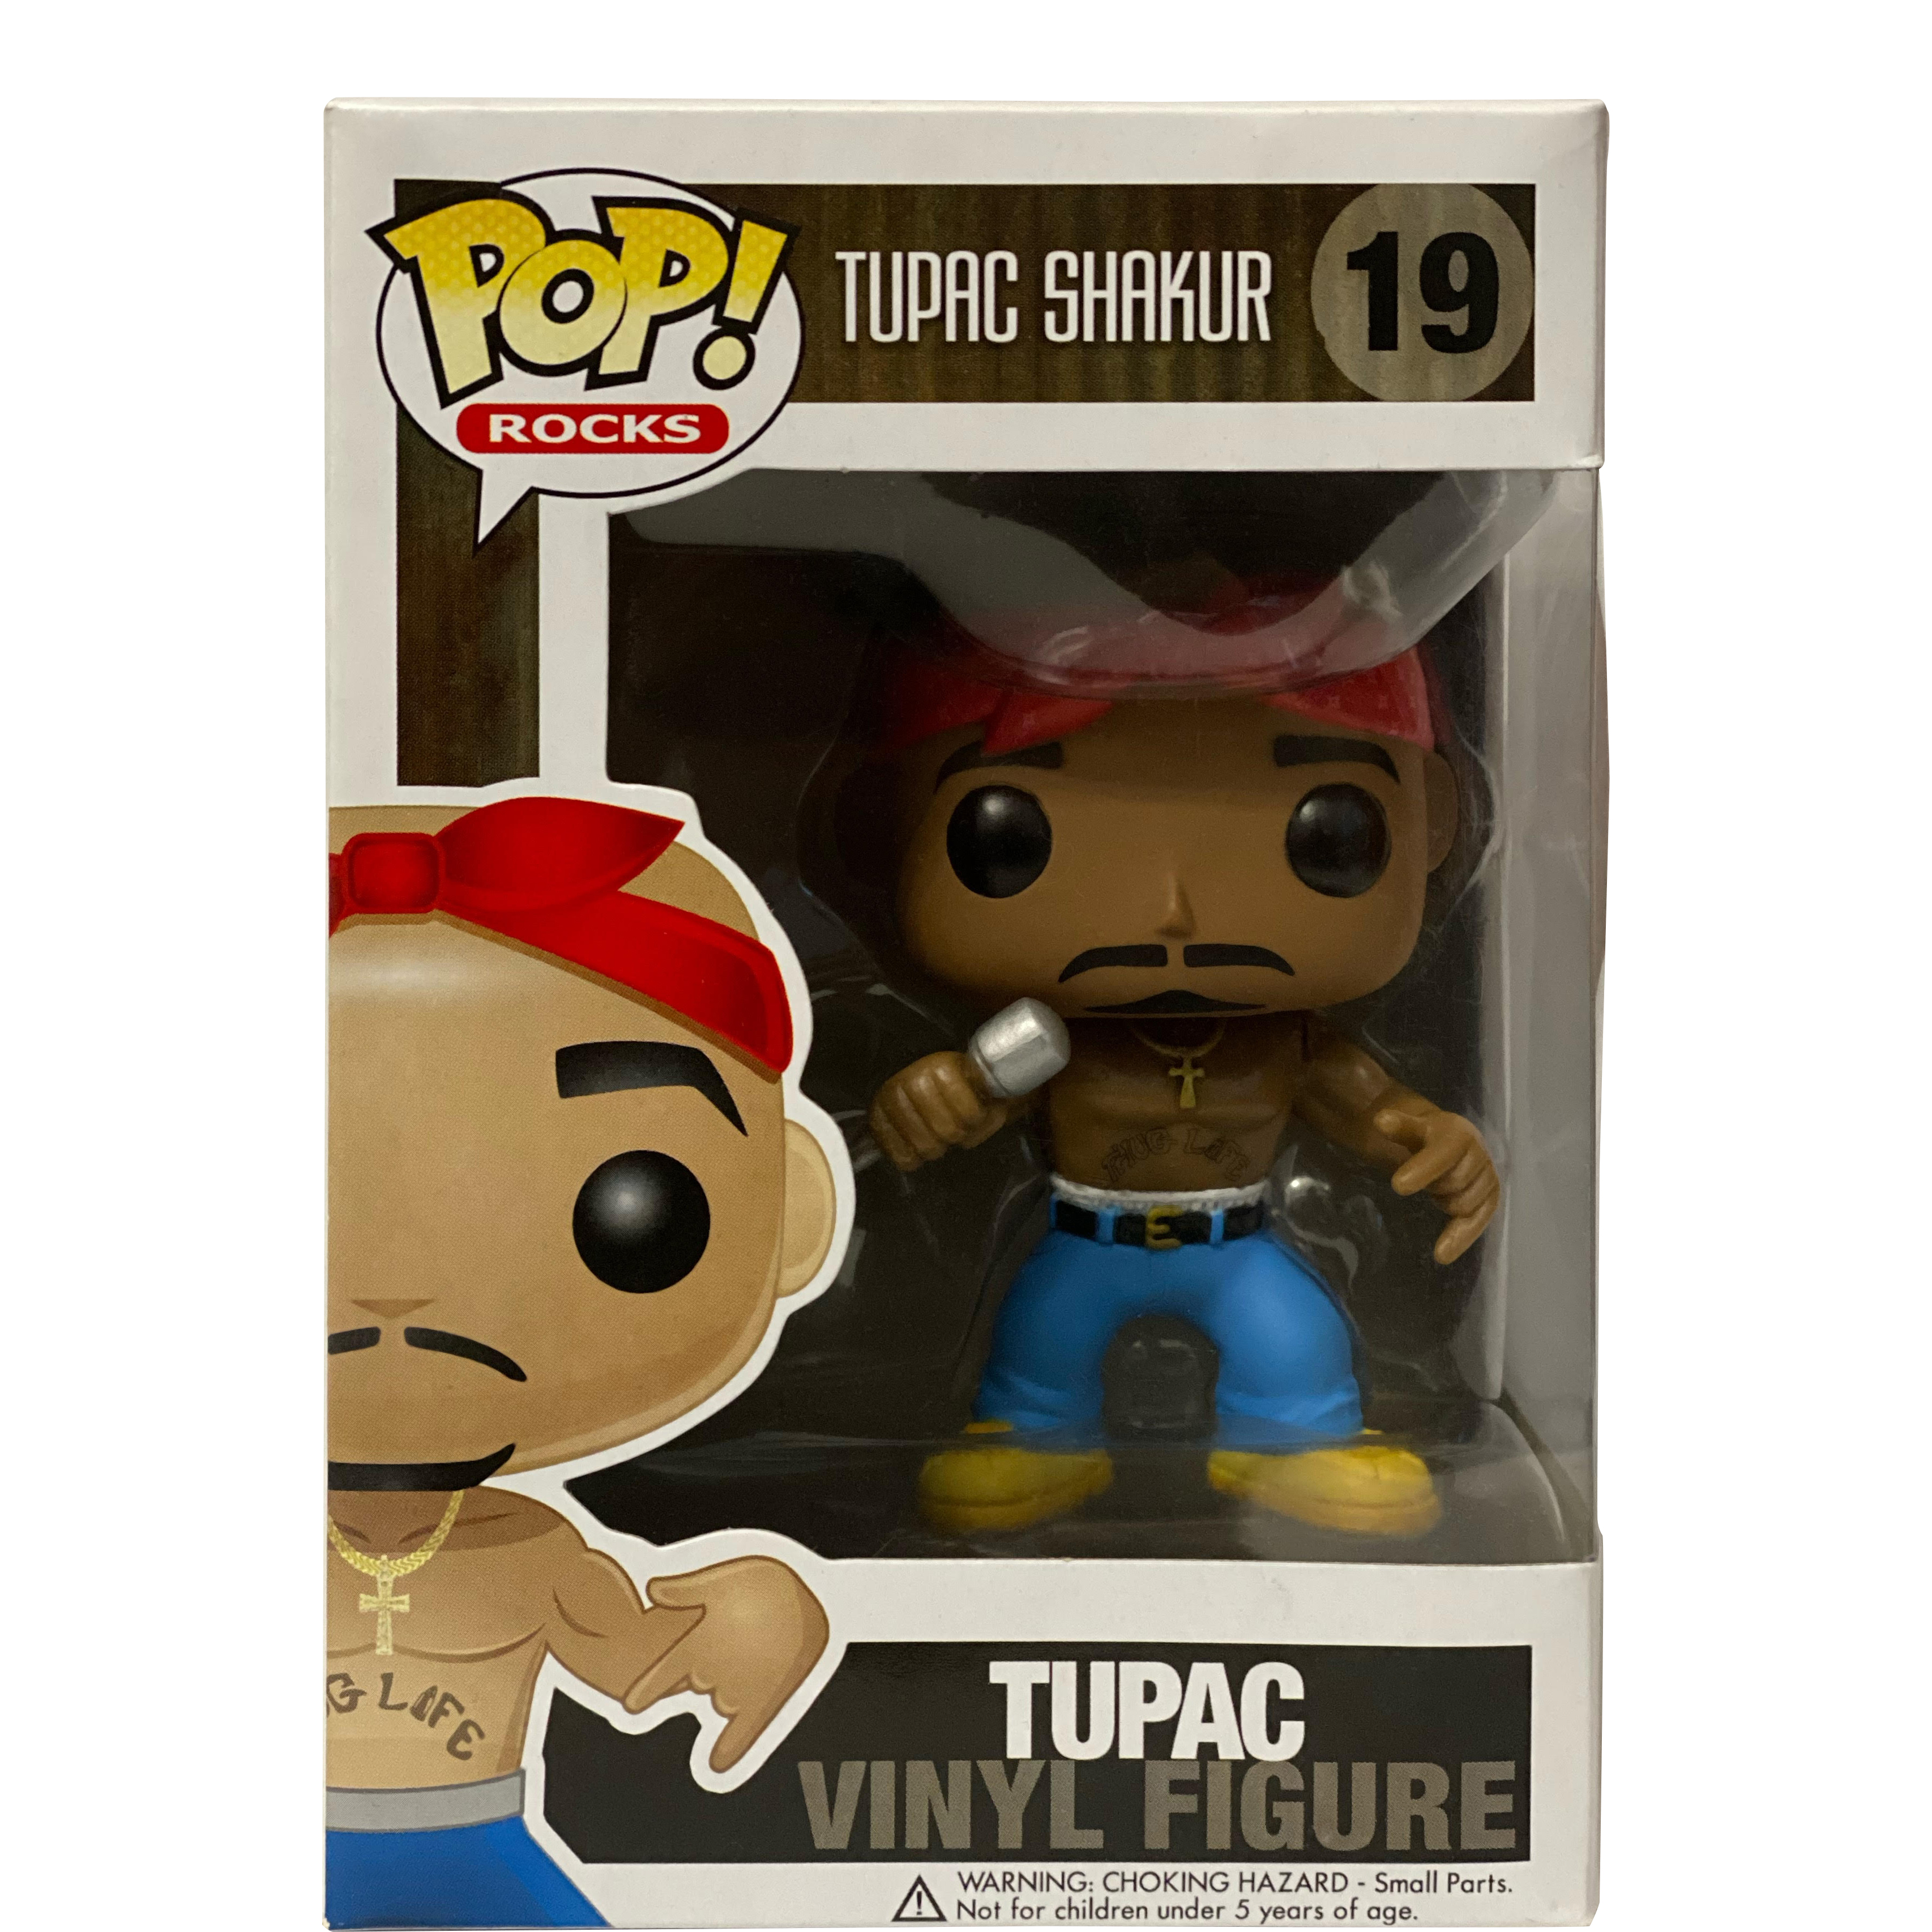 New FunkoPop Tupac #19 Vinyl Figure!